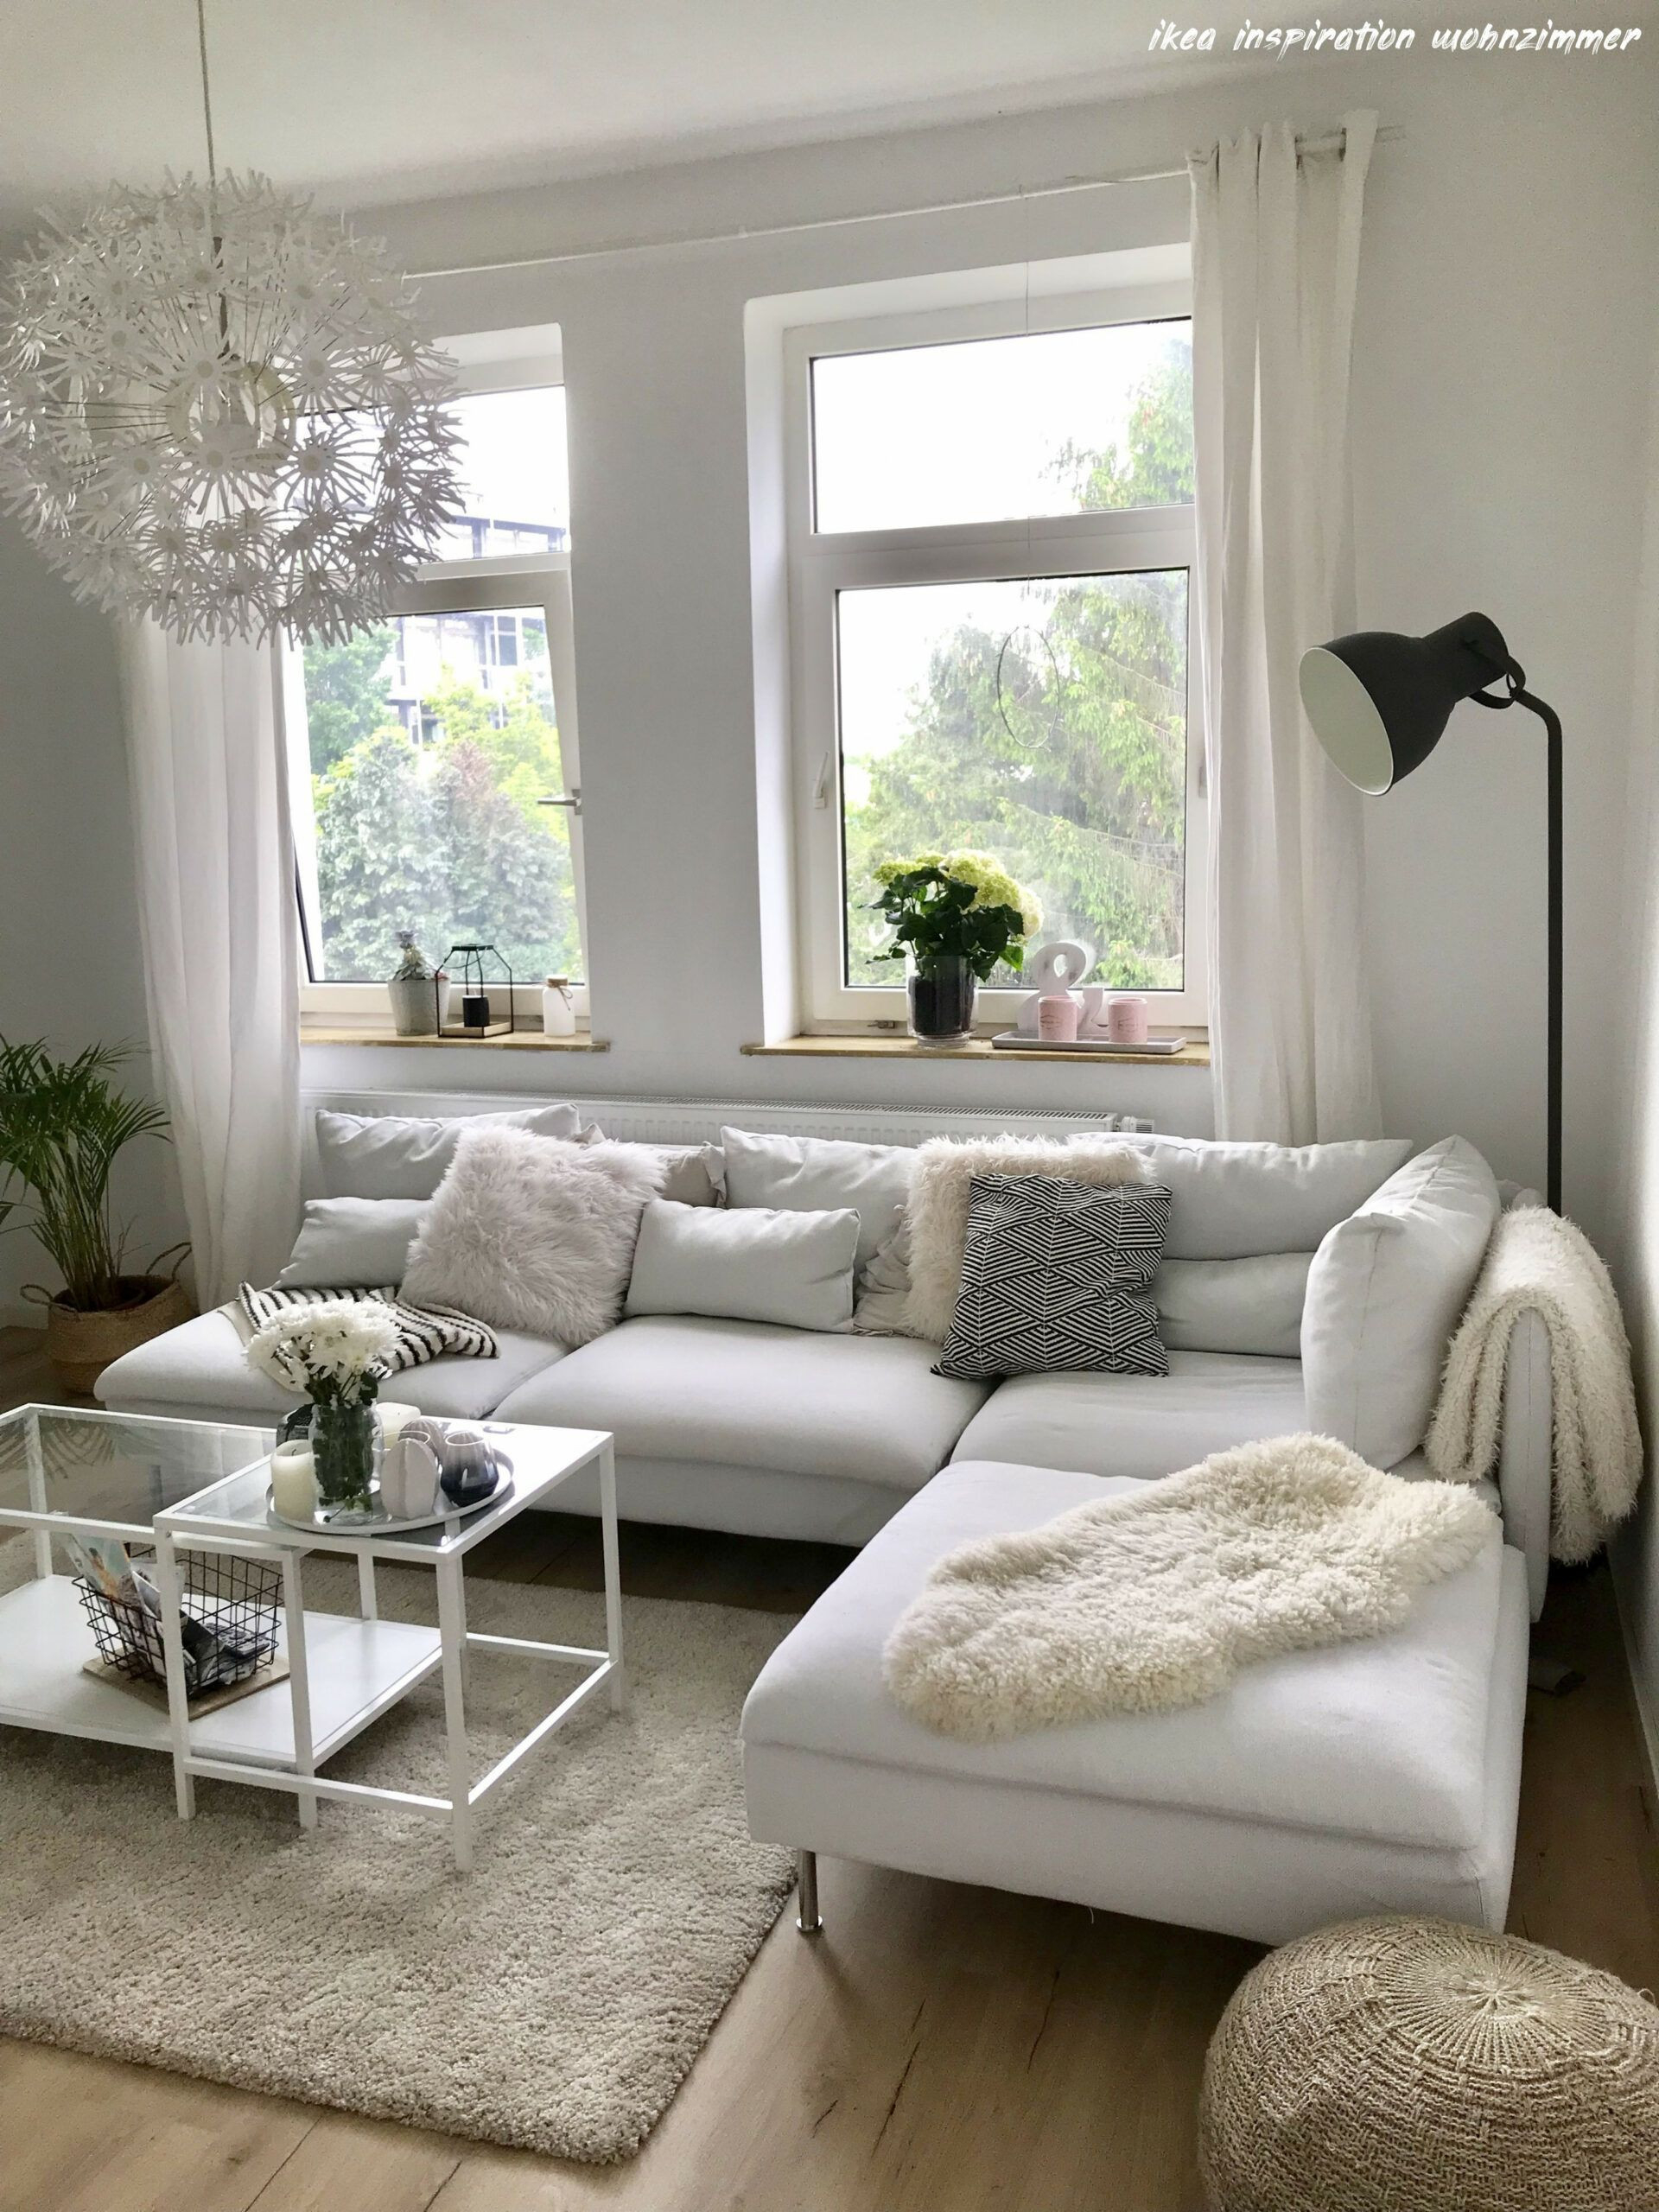 8 Ikea Inspiration Wohnzimmer | Minimalist Home Interior, Living with regard to Wohnzimmer Inspo